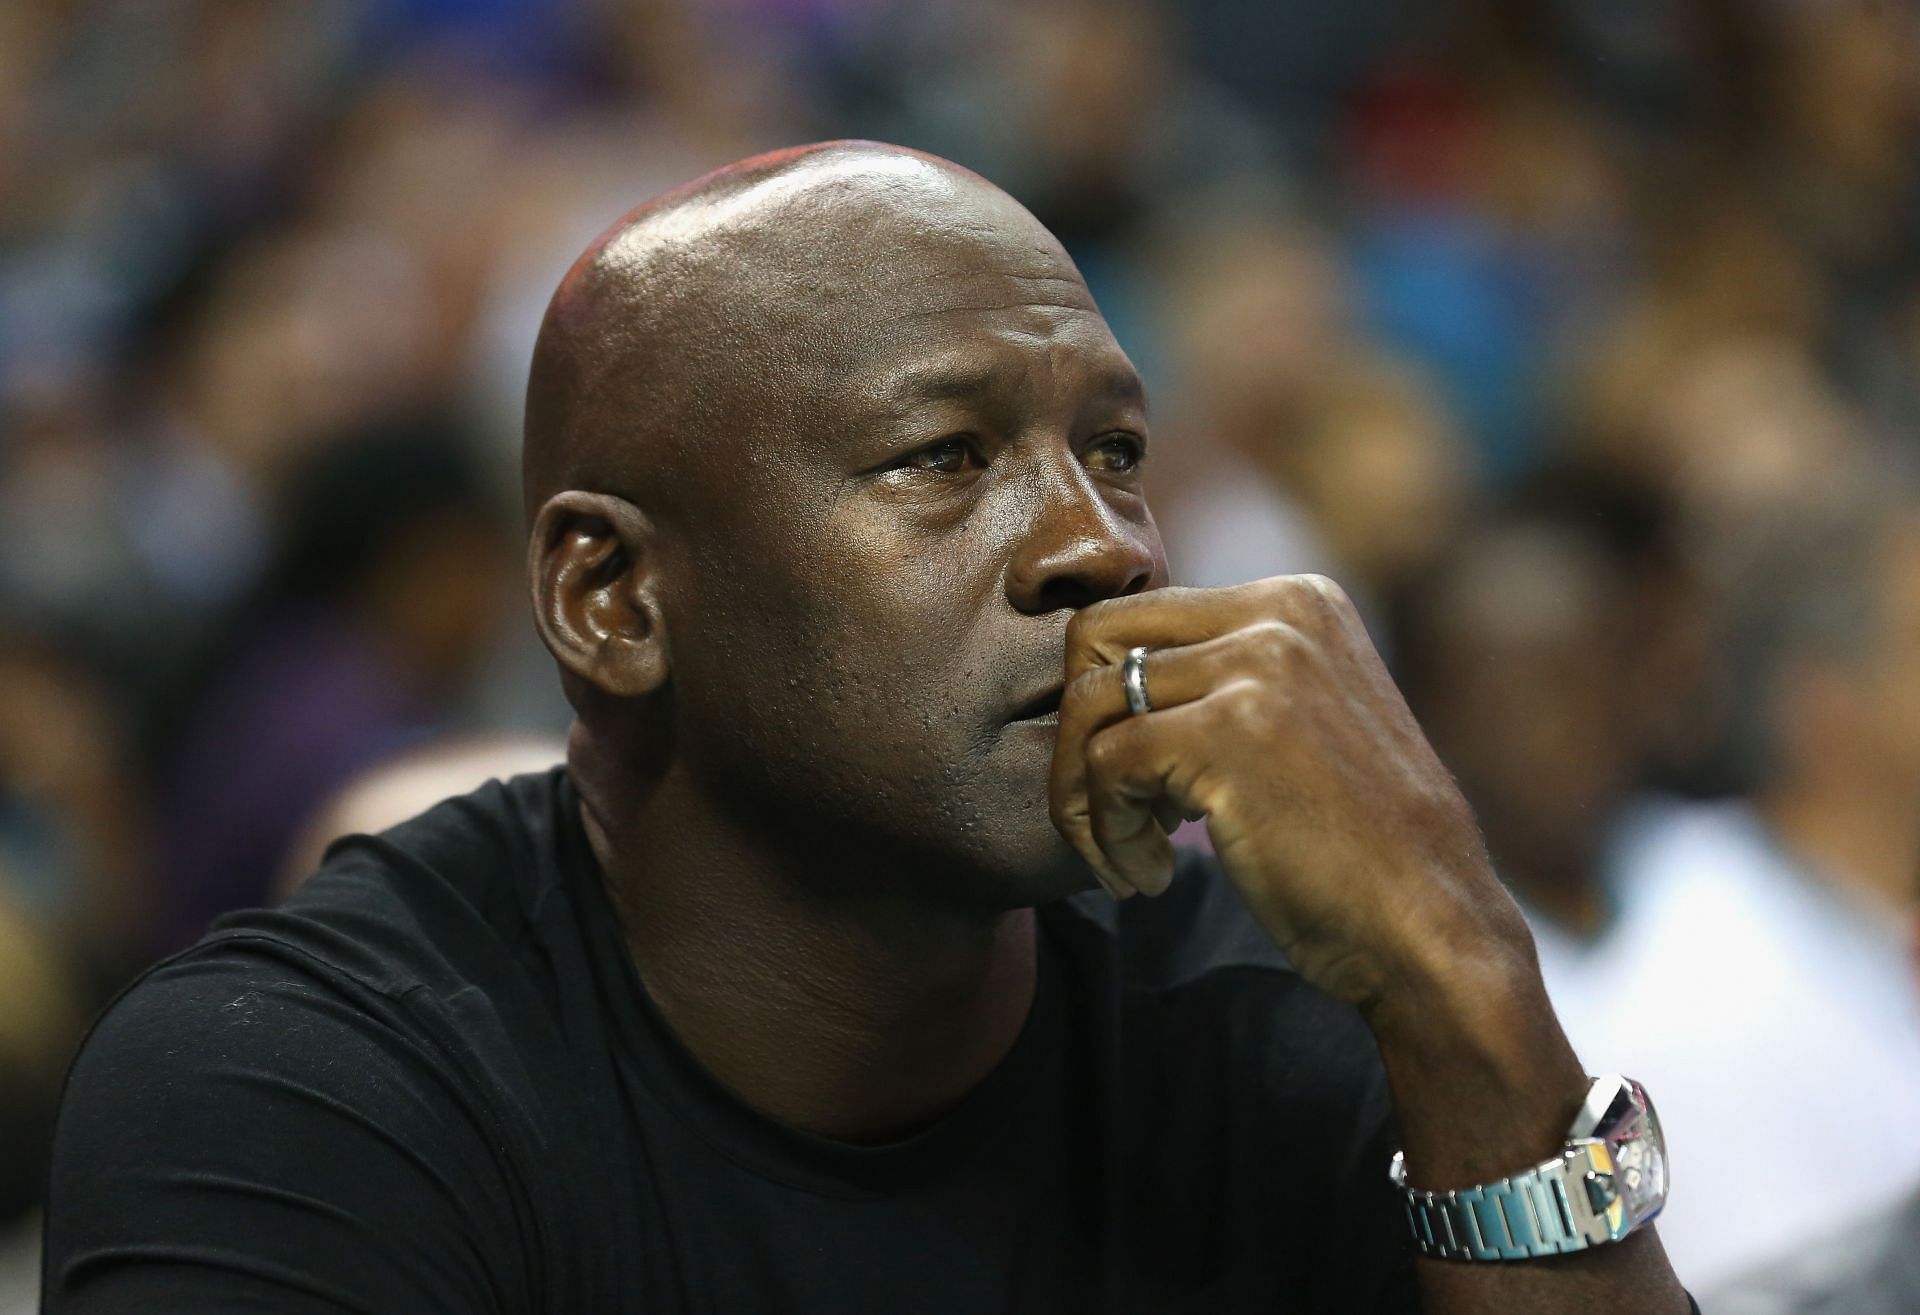 NBA legand Michael Jordan, now the Charlotte Hornets owner